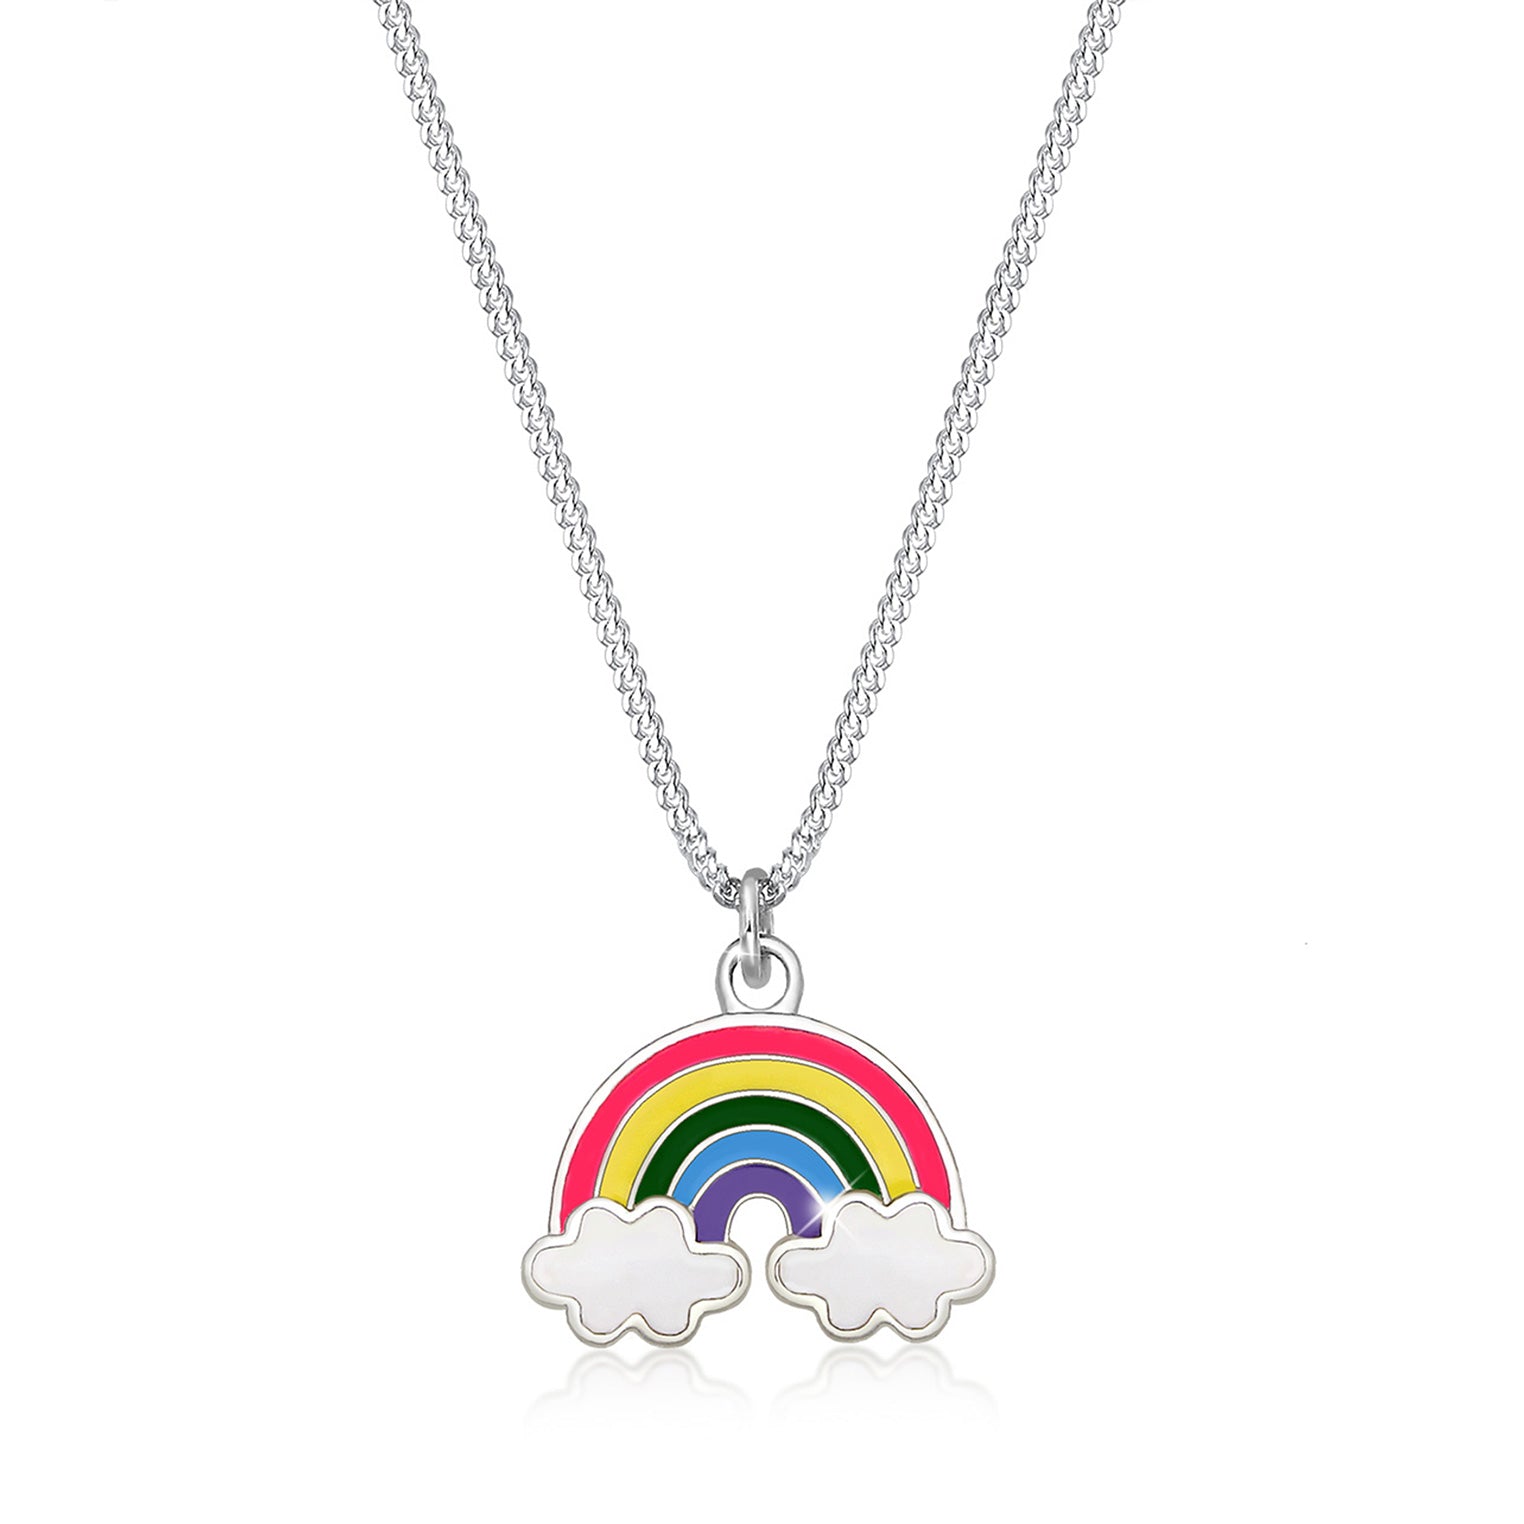 Halskette Regenbogen | 925er Sterling Silber